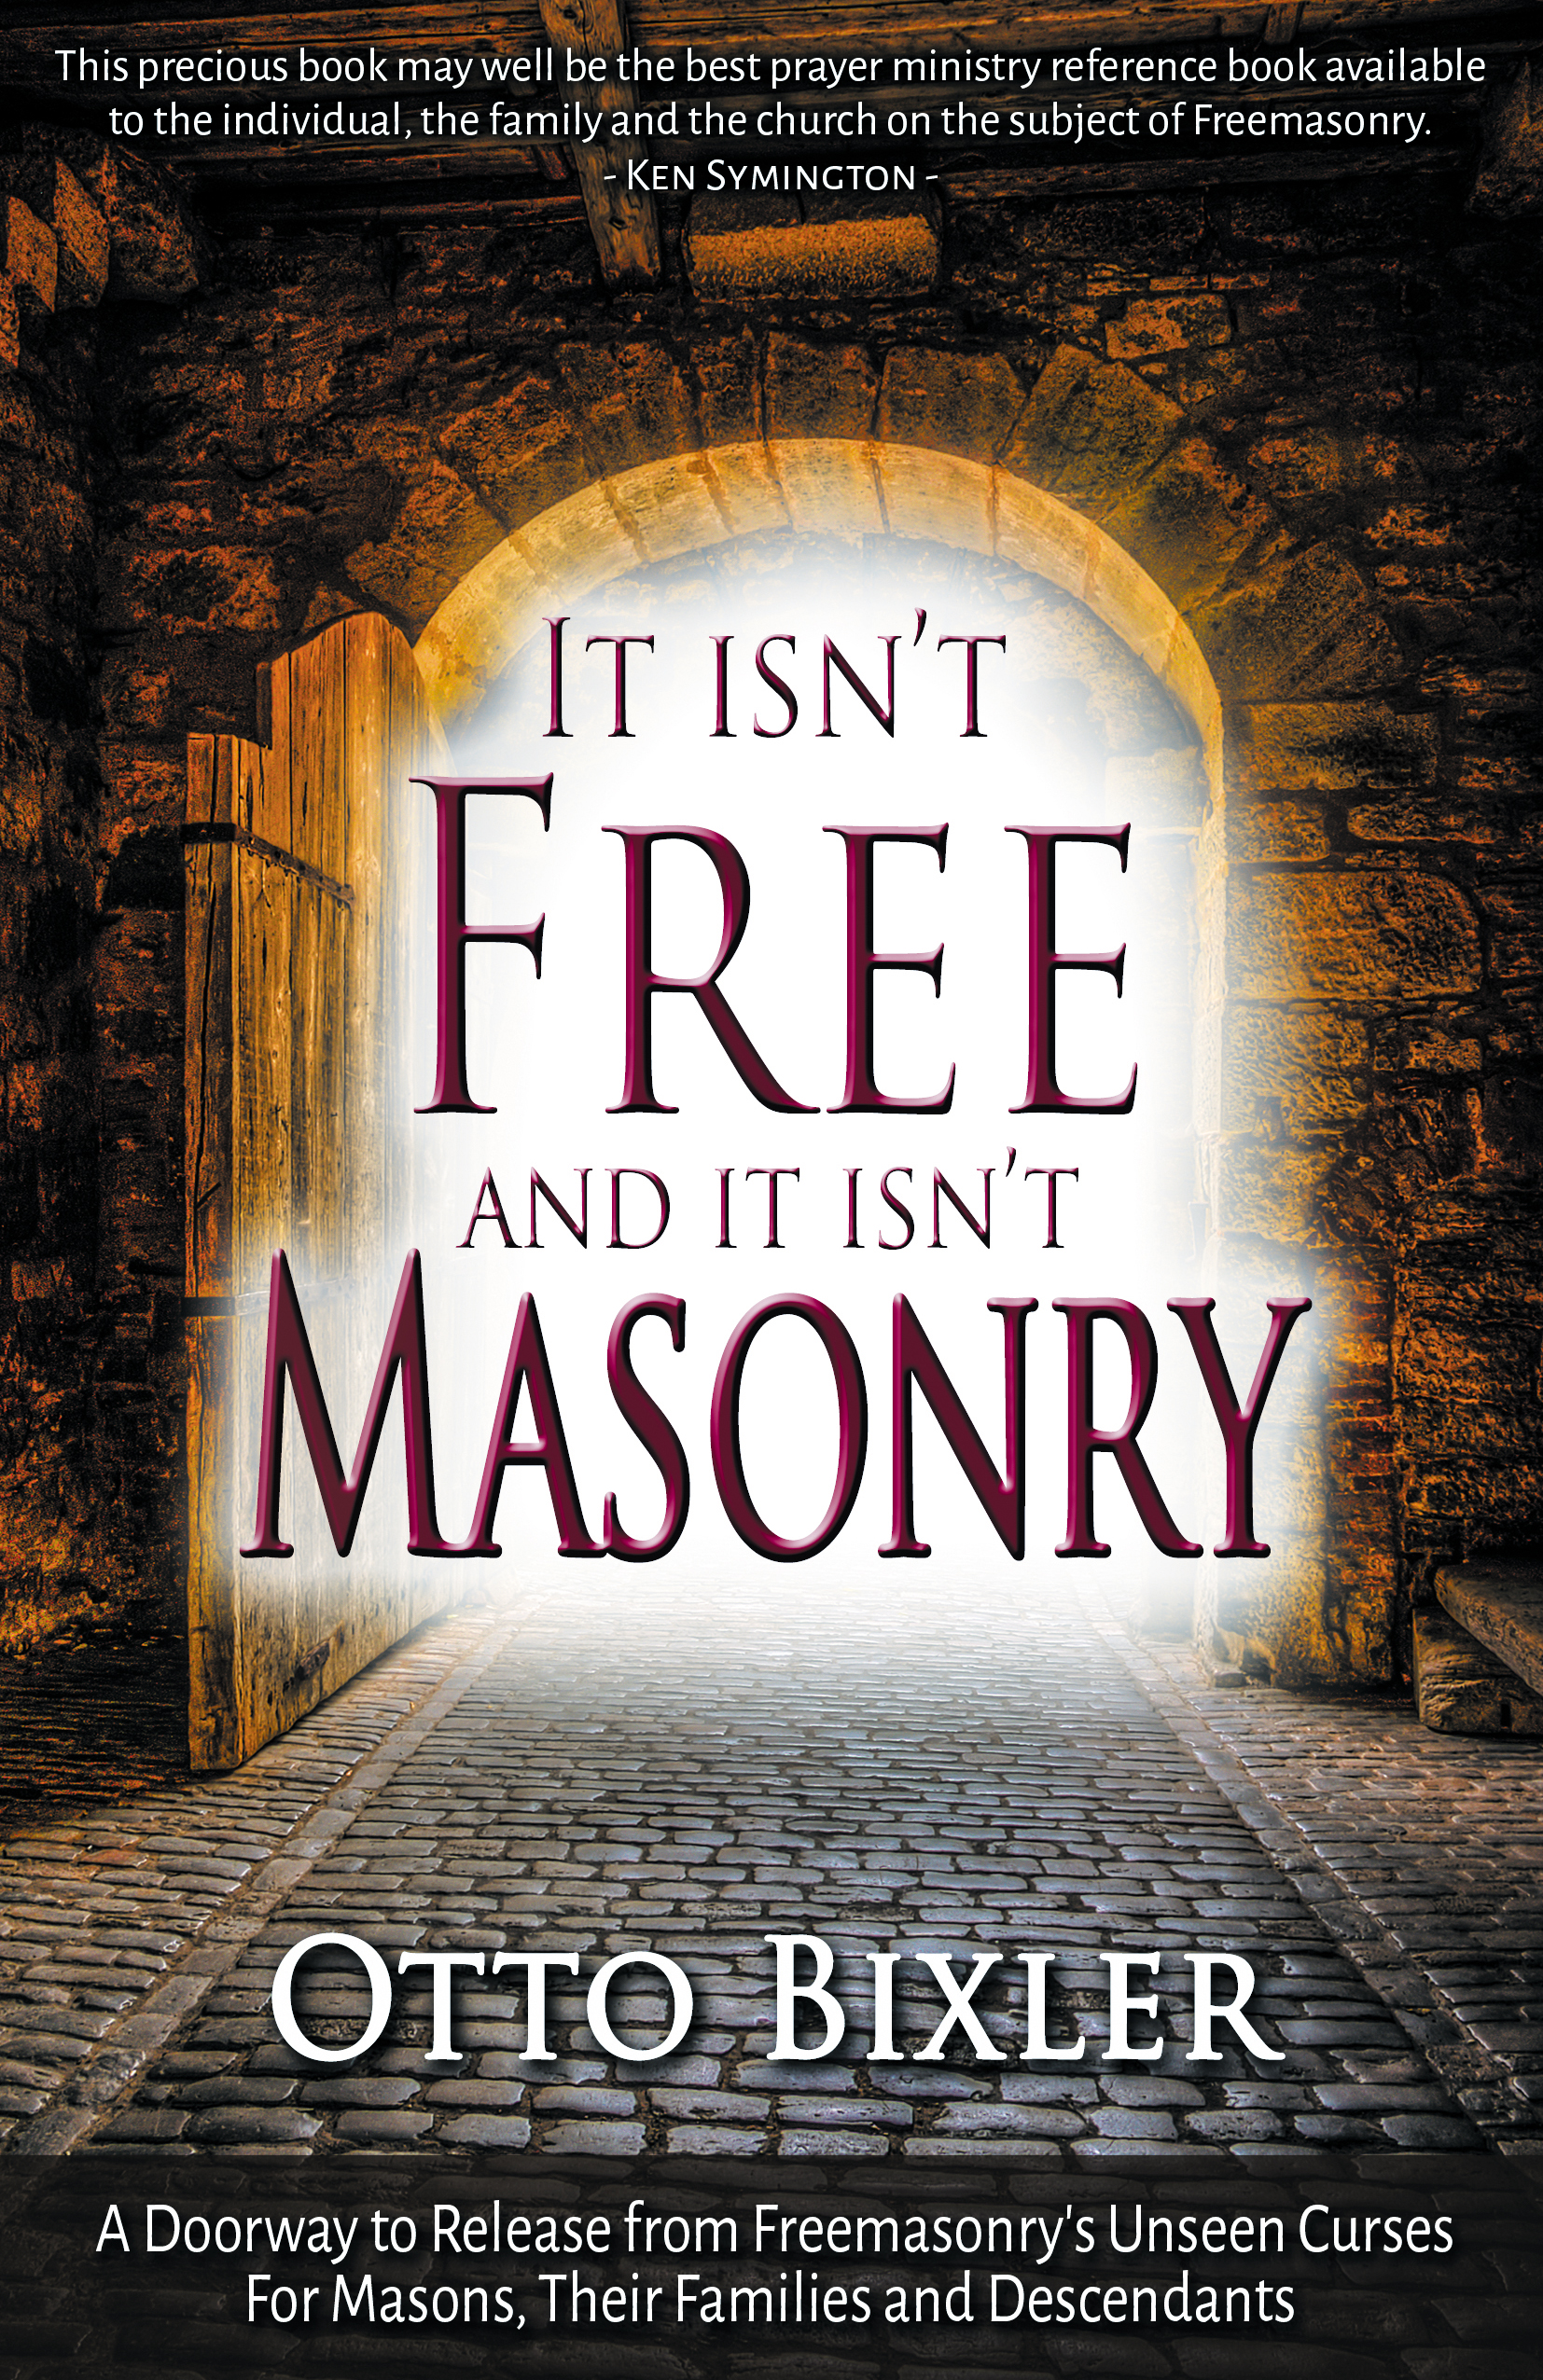 It Isn't Free and It Isn't Masonry. Otto Bixler